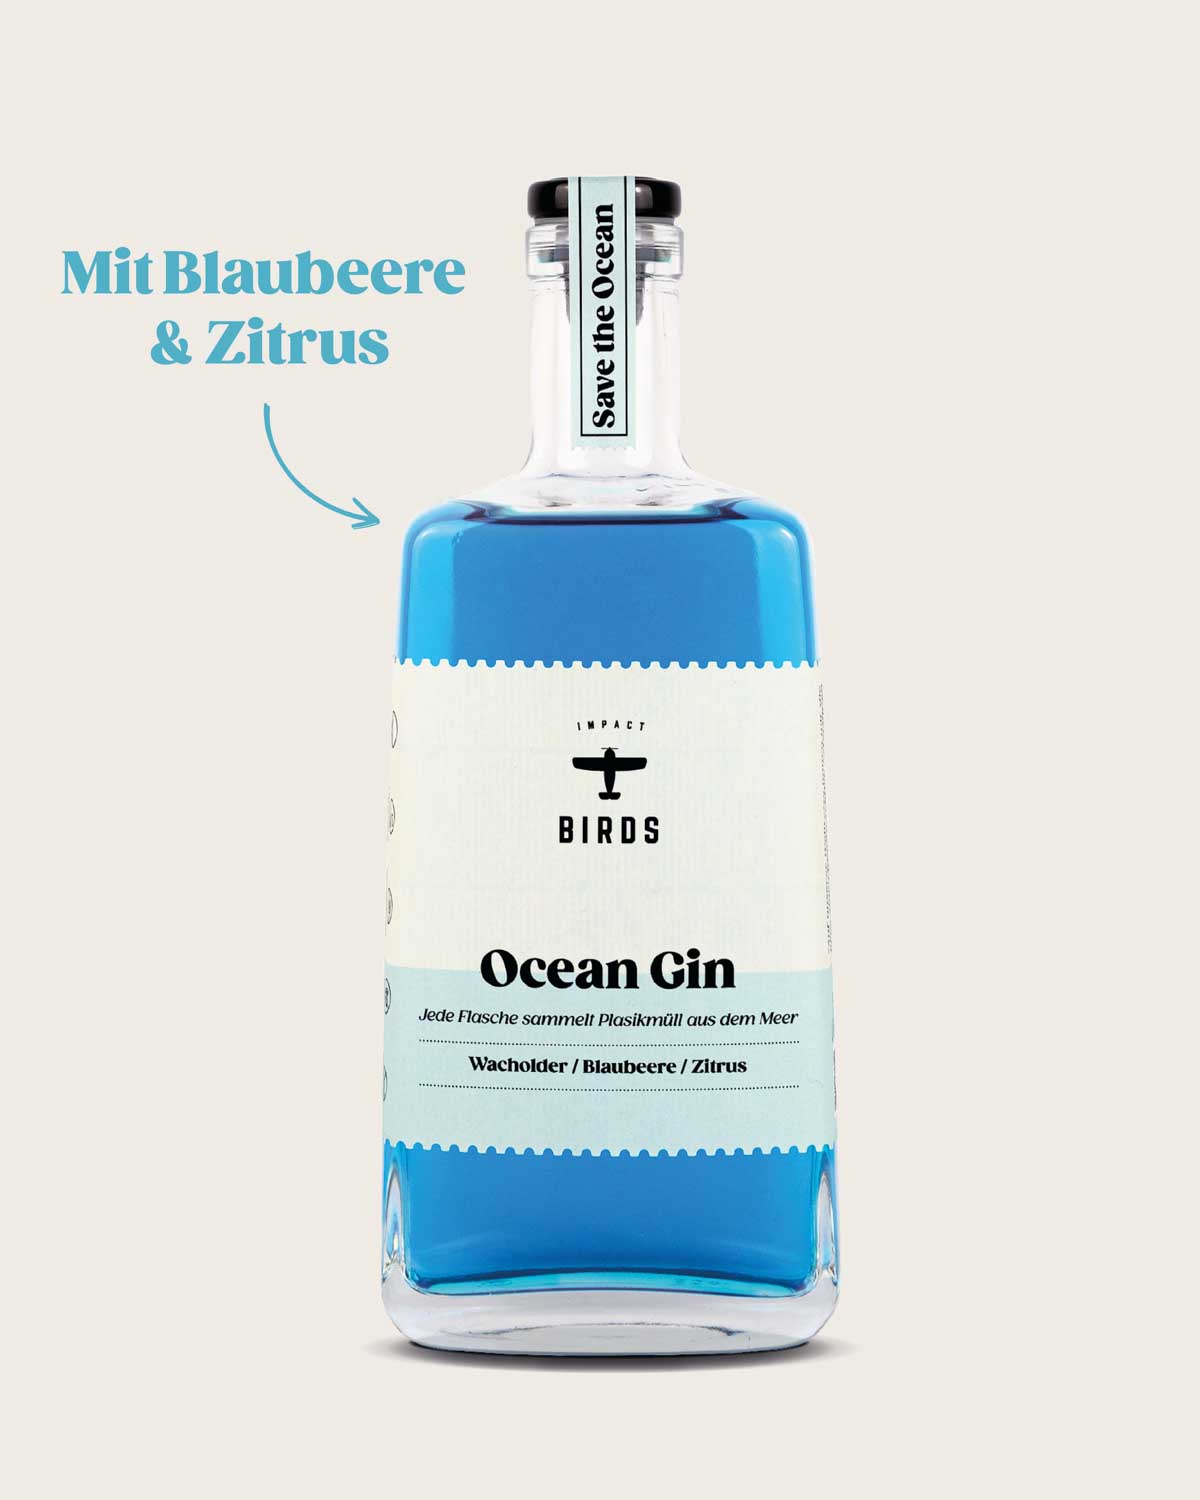 Unser blauer Ocean Gin in stylischer Glasflasche. Blaubeere und Zitrus sind die Hauptbotanicals und bilden das Dreamteam und bringen einen besonders fruchtig, erfrischenden Geschmack in diesen Gin. 